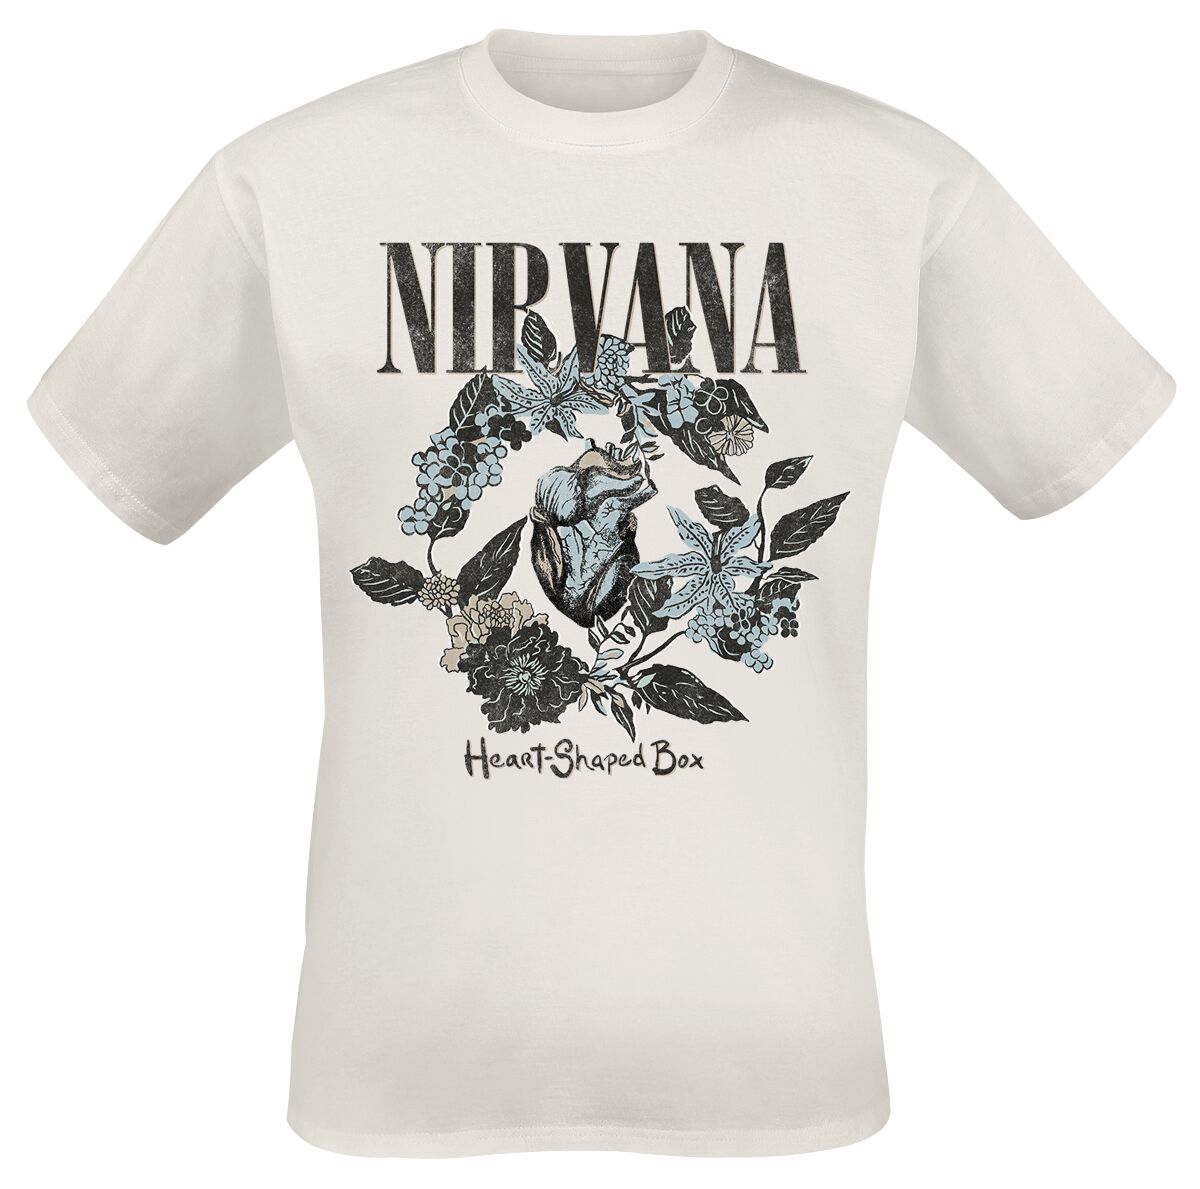 Nirvana T-Shirt - Heart Shape Box - S bis 3XL - für Männer - Größe M - weiß  - Lizenziertes Merchandise!